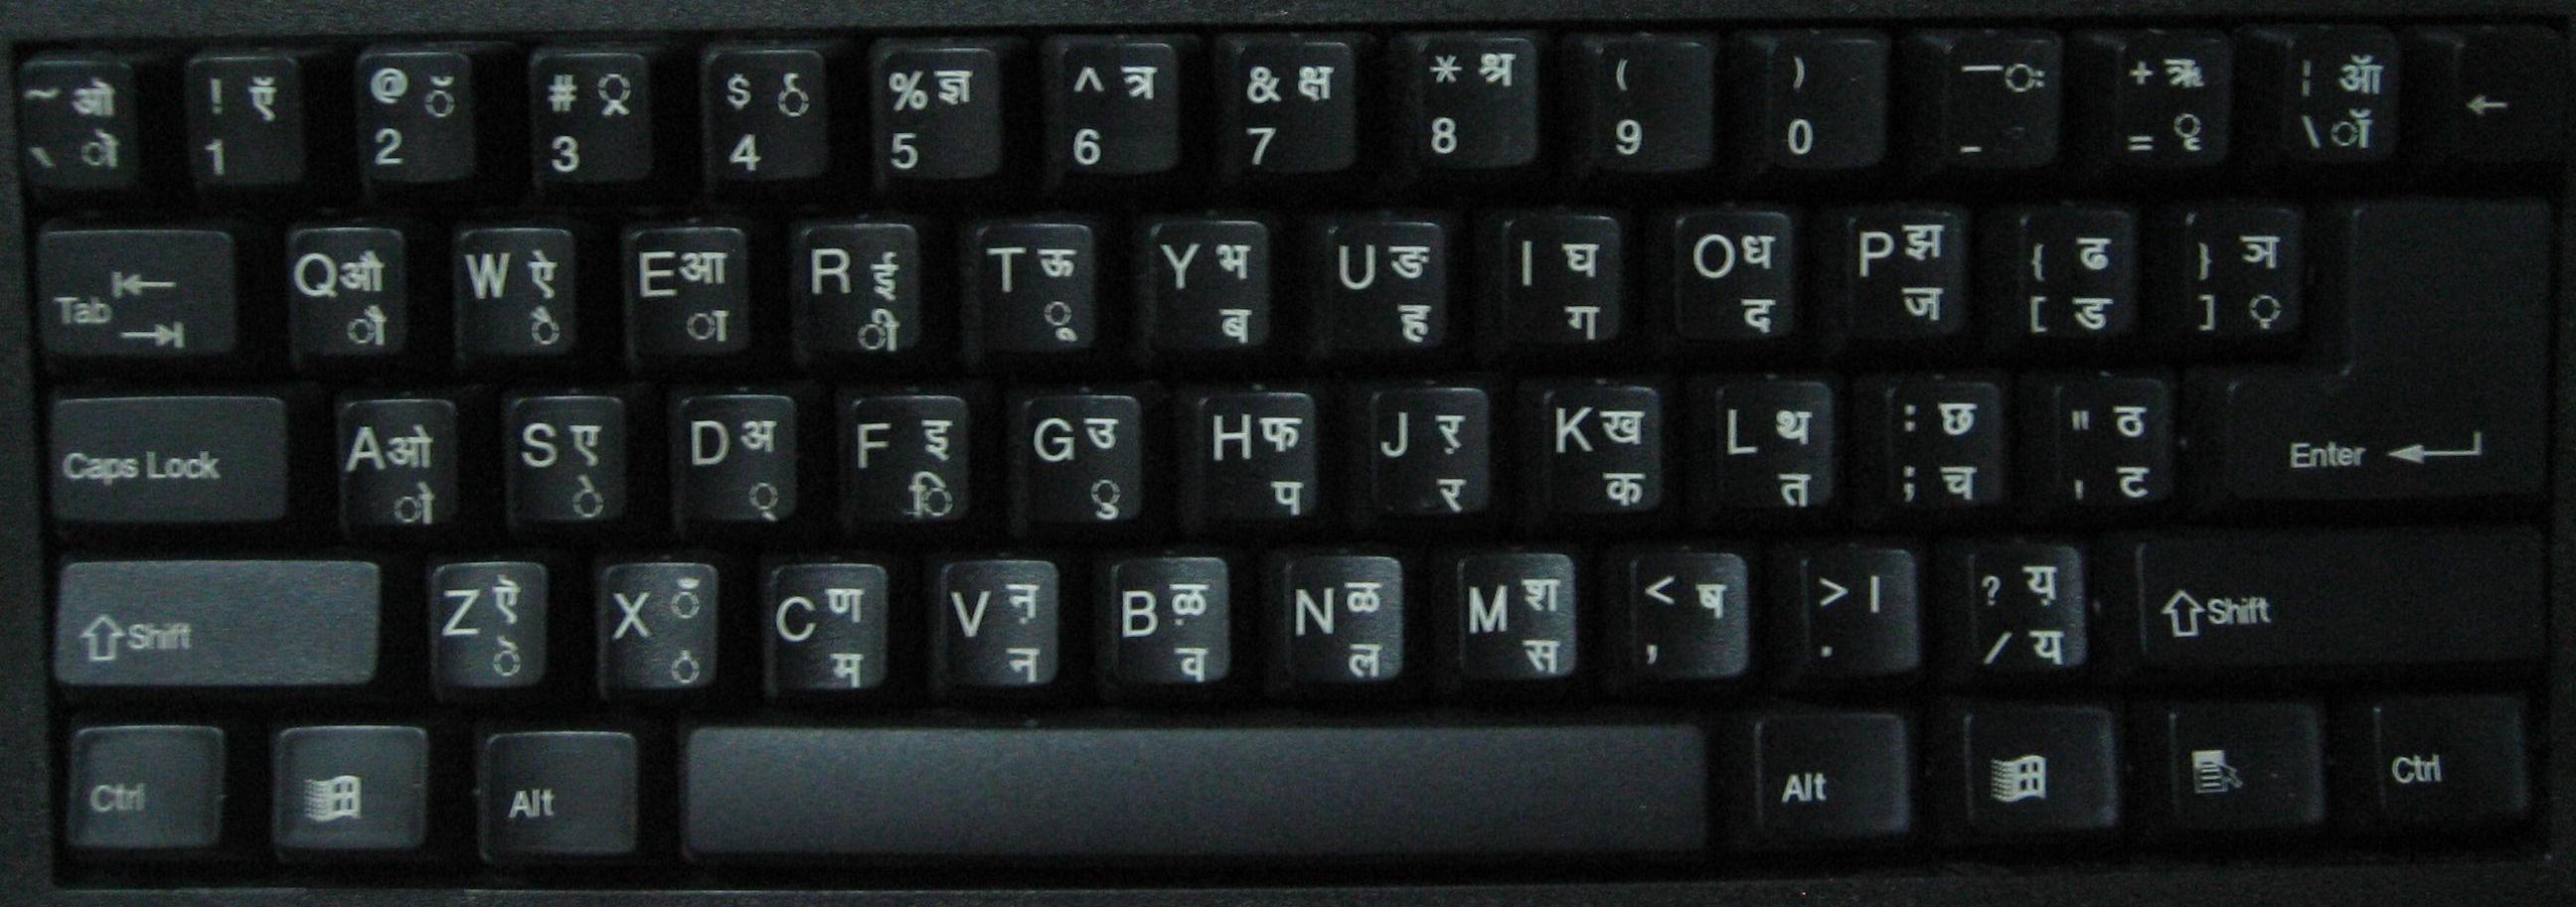 印刷有天城文的印度键盘